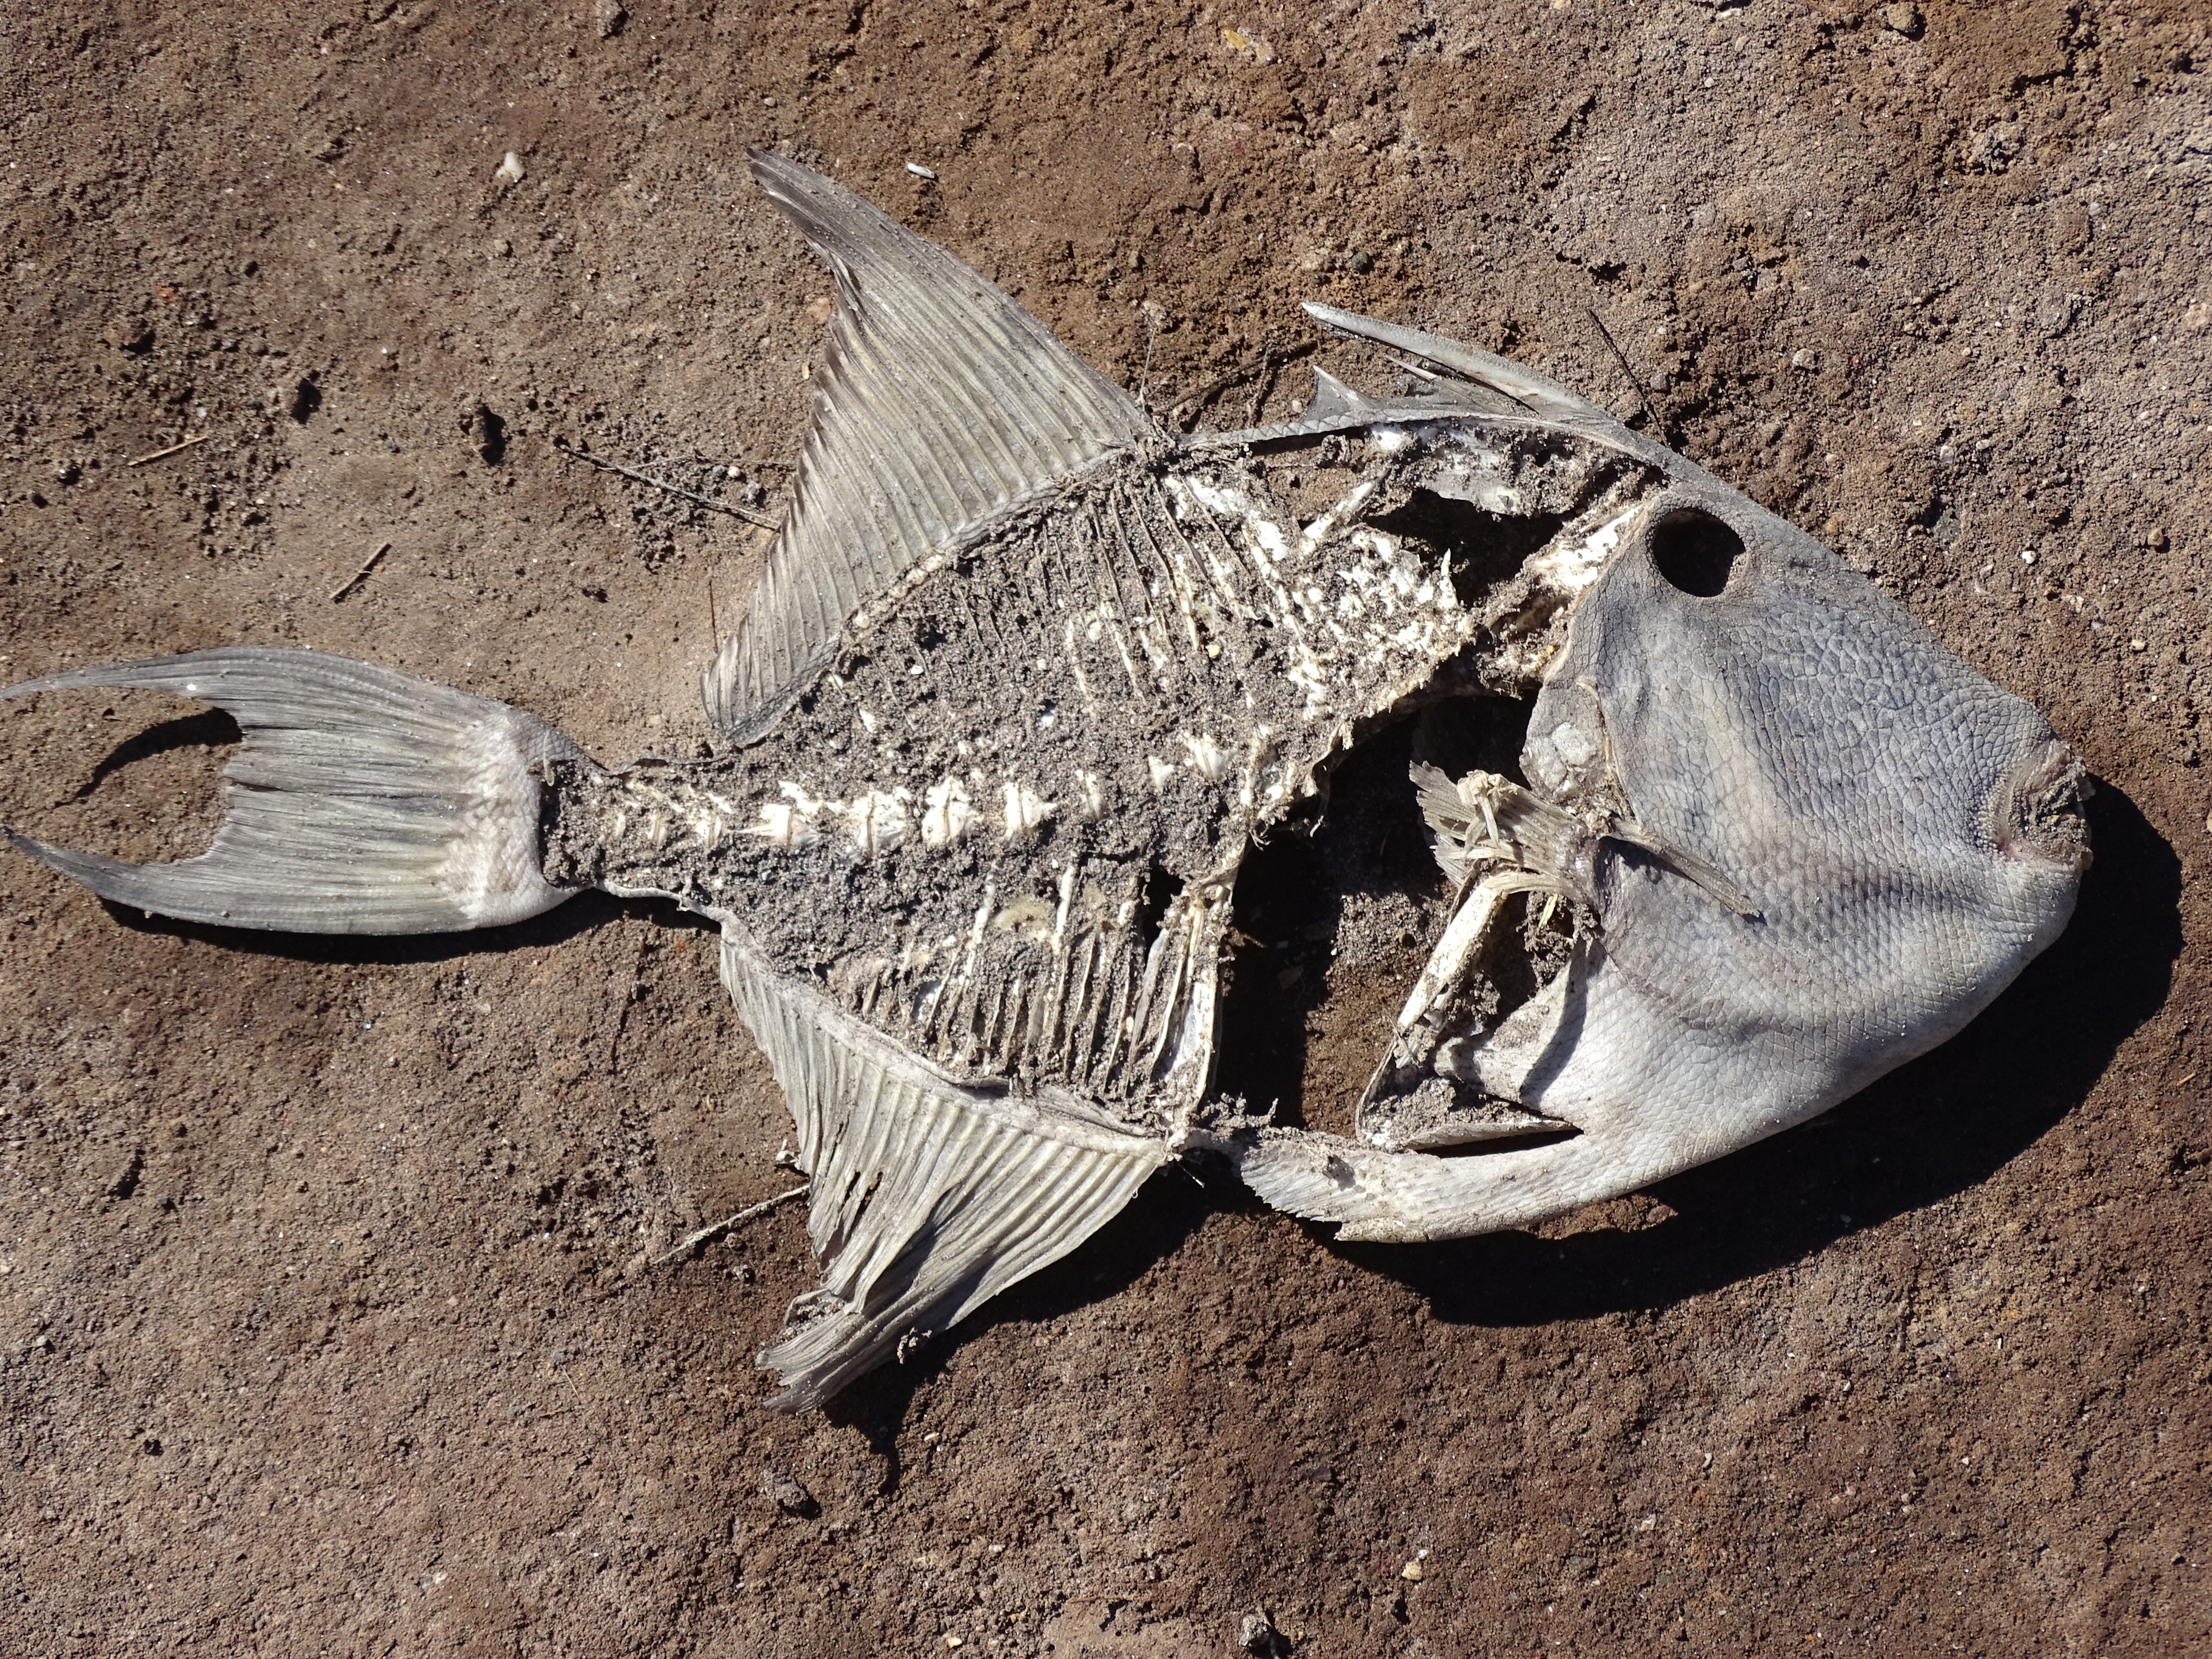 File:Still Life with Dead Fish - Mulegé - Baja California Sur ...